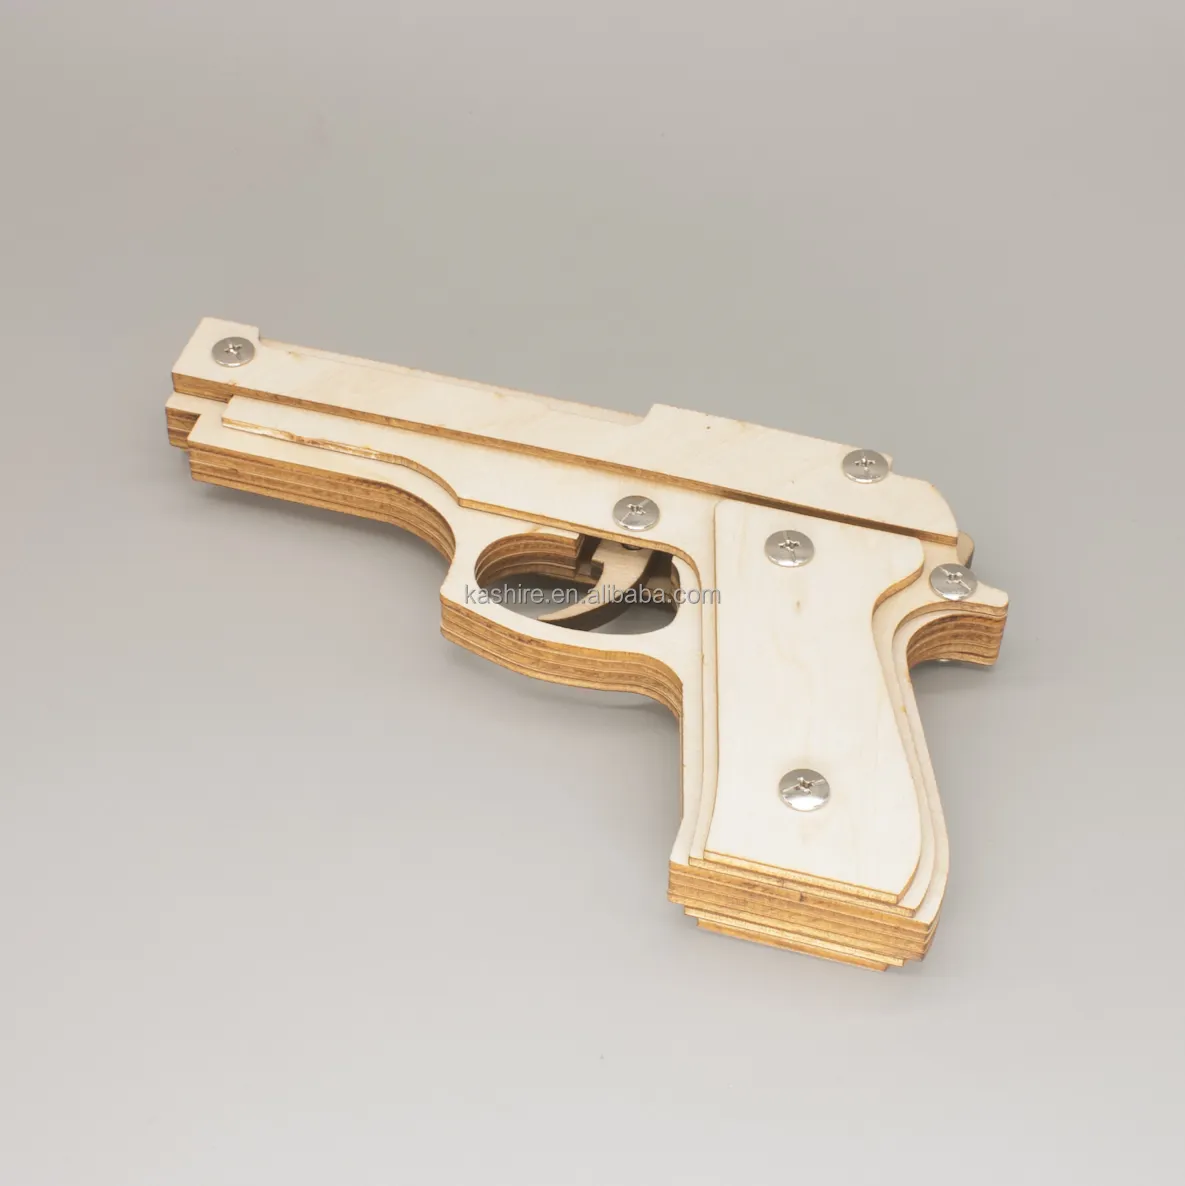 เด็ก3D เลเซอร์ตัดยางวงไม้ของเล่นปืน DIY รุ่น